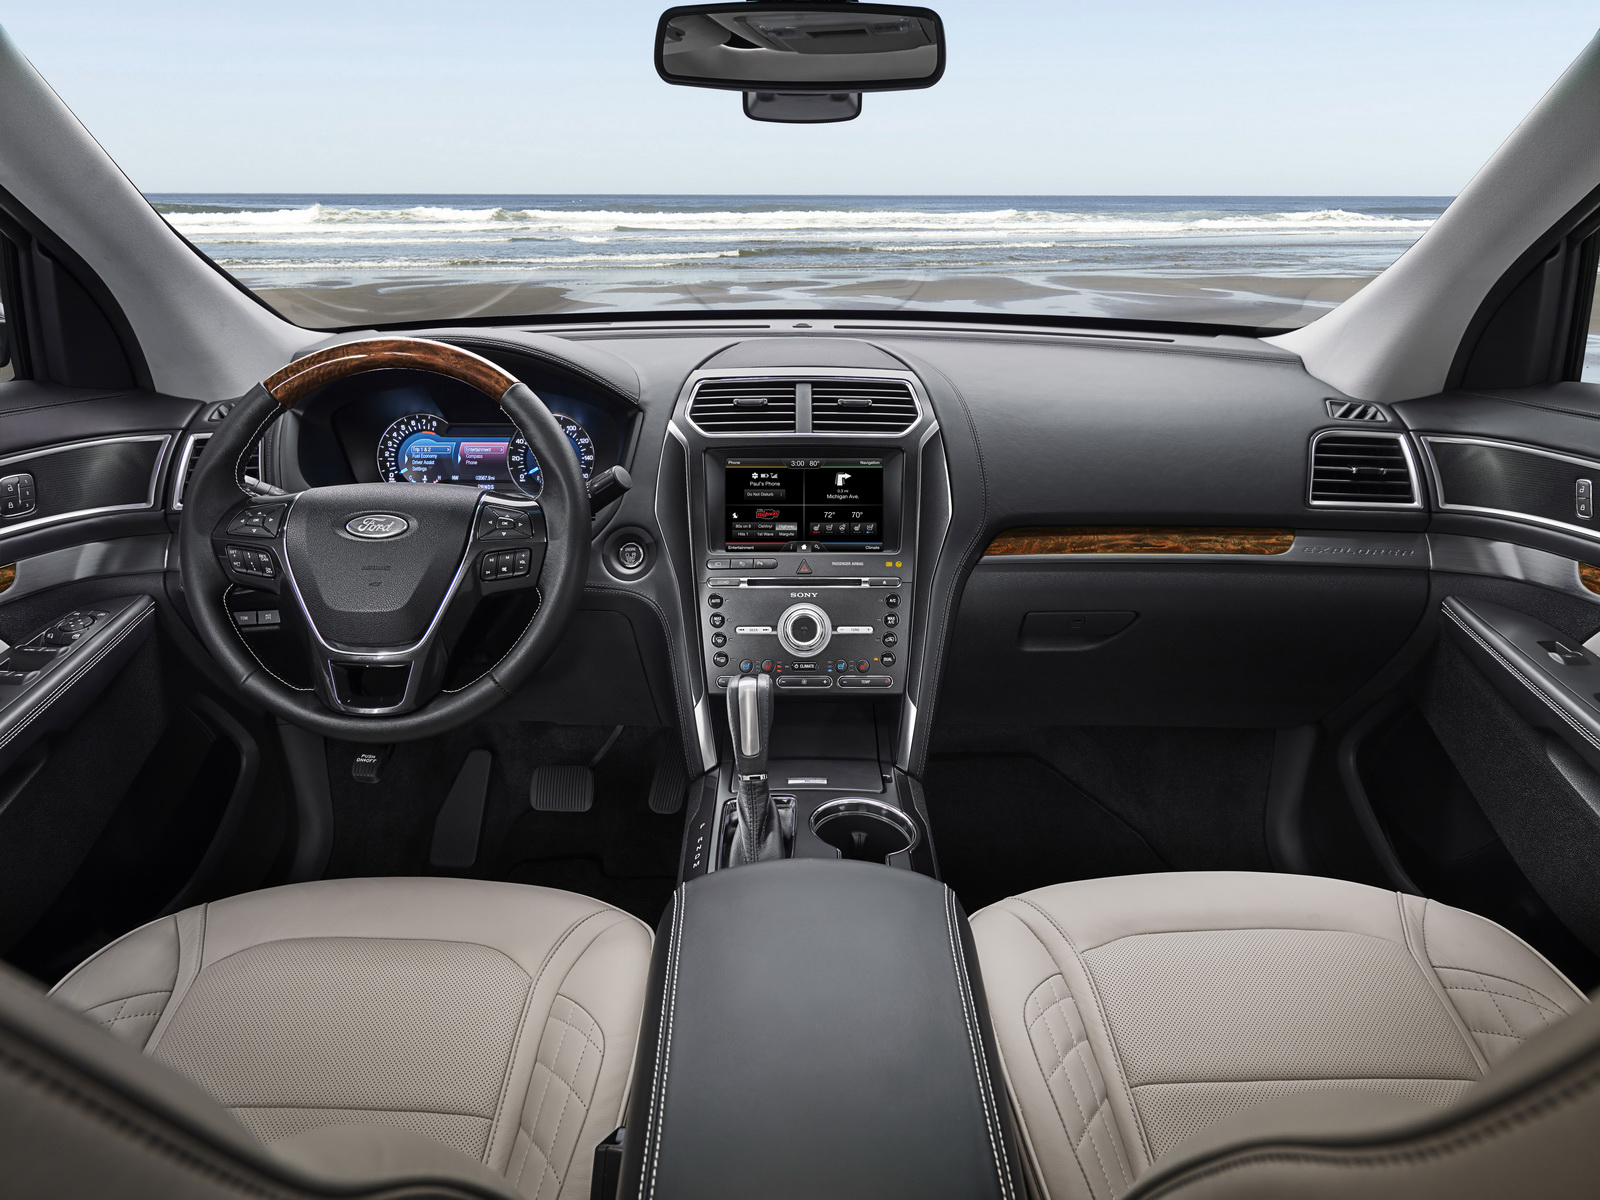 New 2016 Ford Explorer Platinum series interior in Medium Soft Ceramic